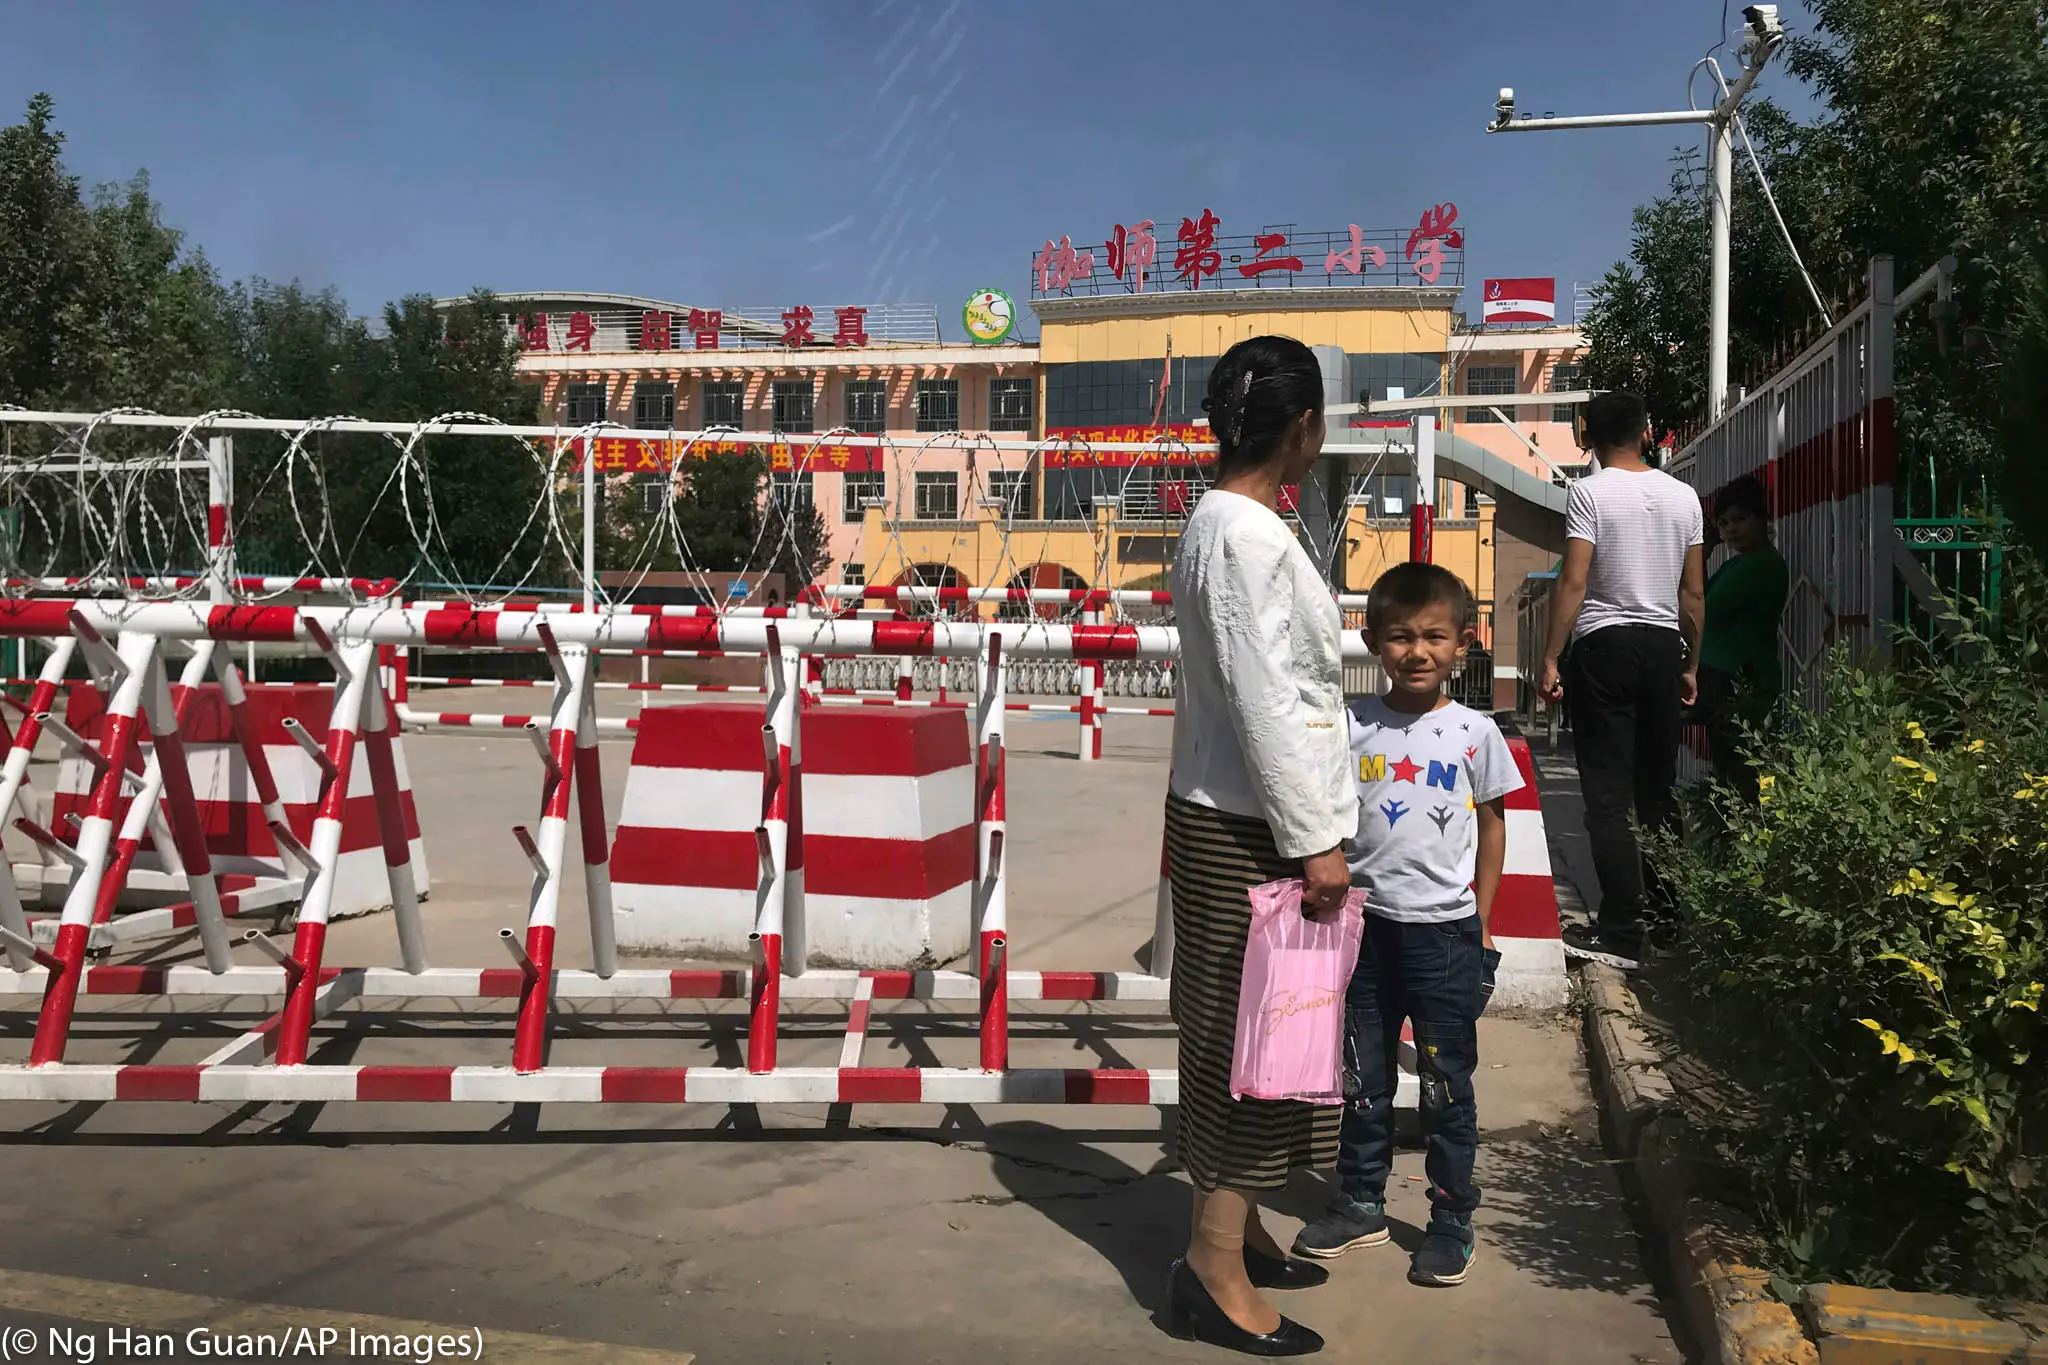 Les écoles fréquentées par les minorités au Xinjiang sont protégées par une kyrielle de caméras, de fils barbelés et de barrières. (© Ng Han Guan/AP Images)